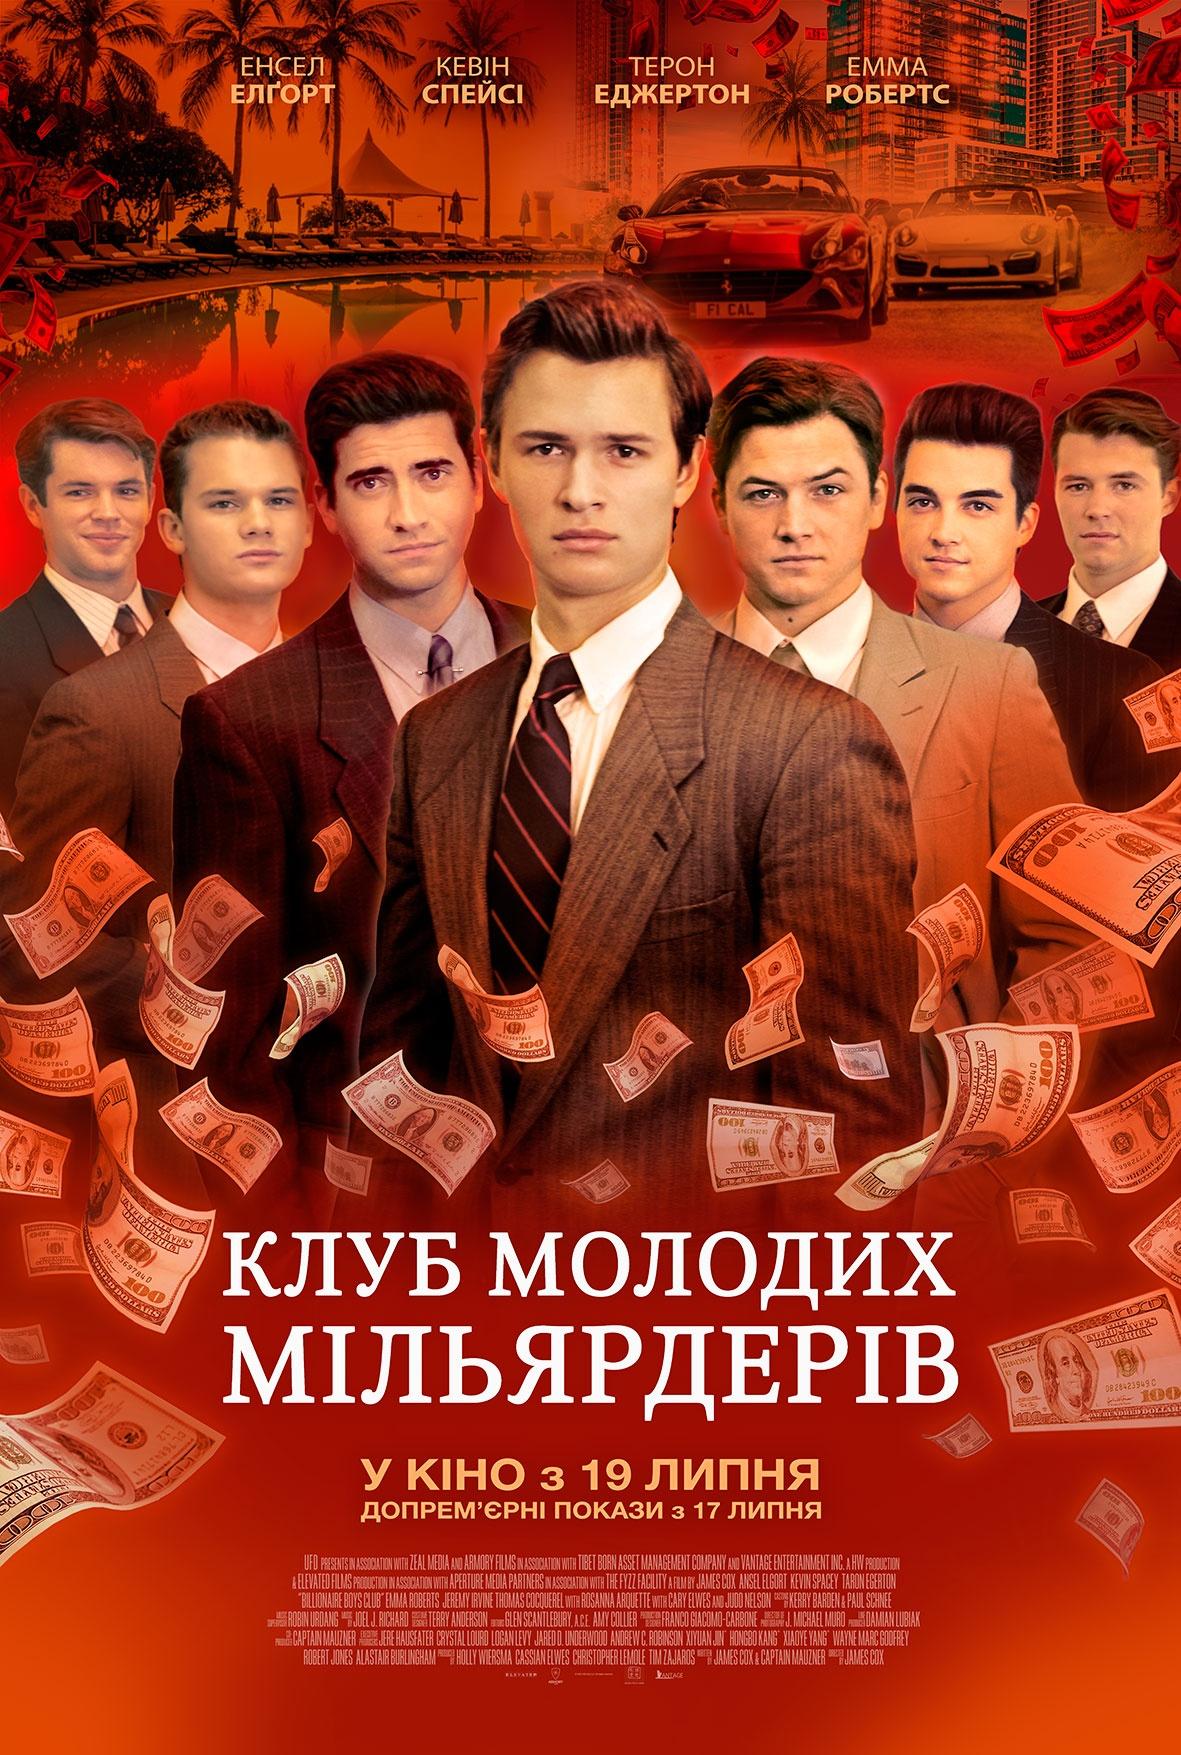 Американский биографический фильм, криминальная драма «Клуб миллиардеров» (Billionaire Boys Club) 